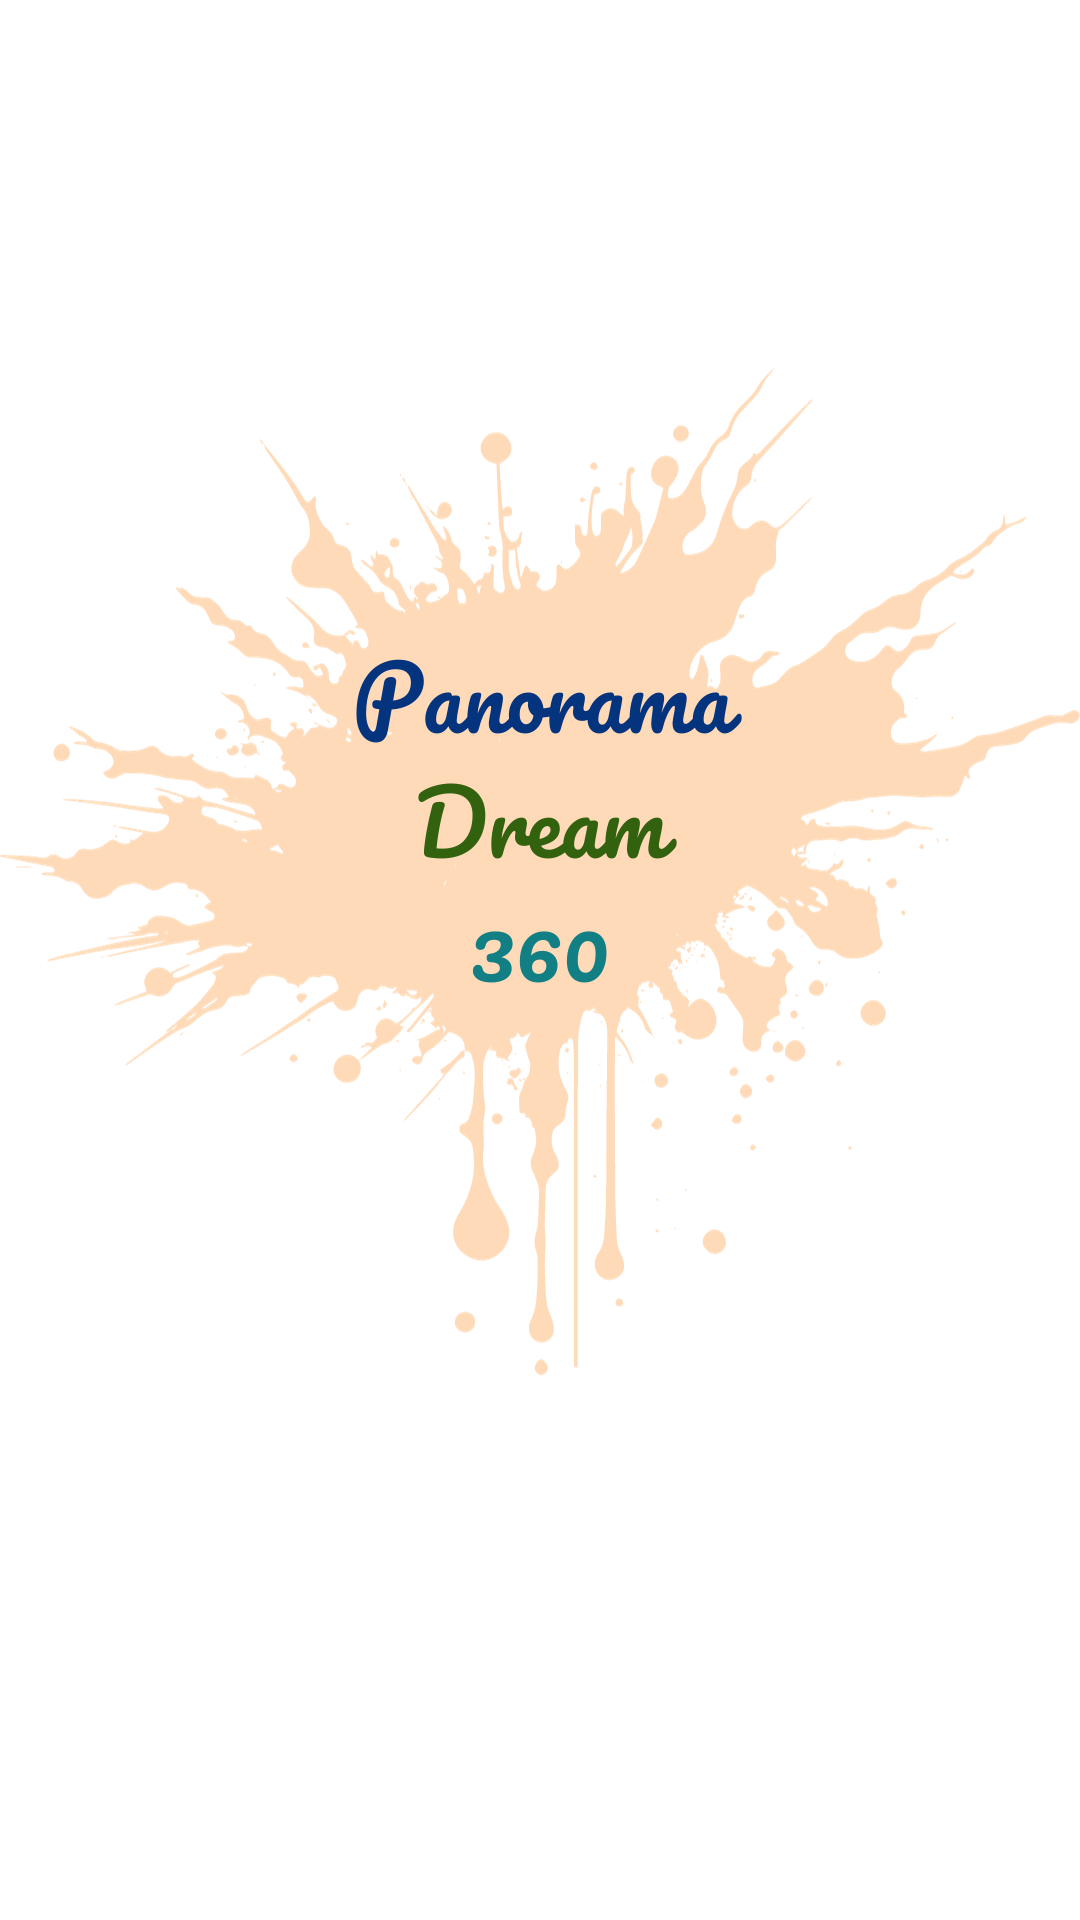 Panorama Dream 360